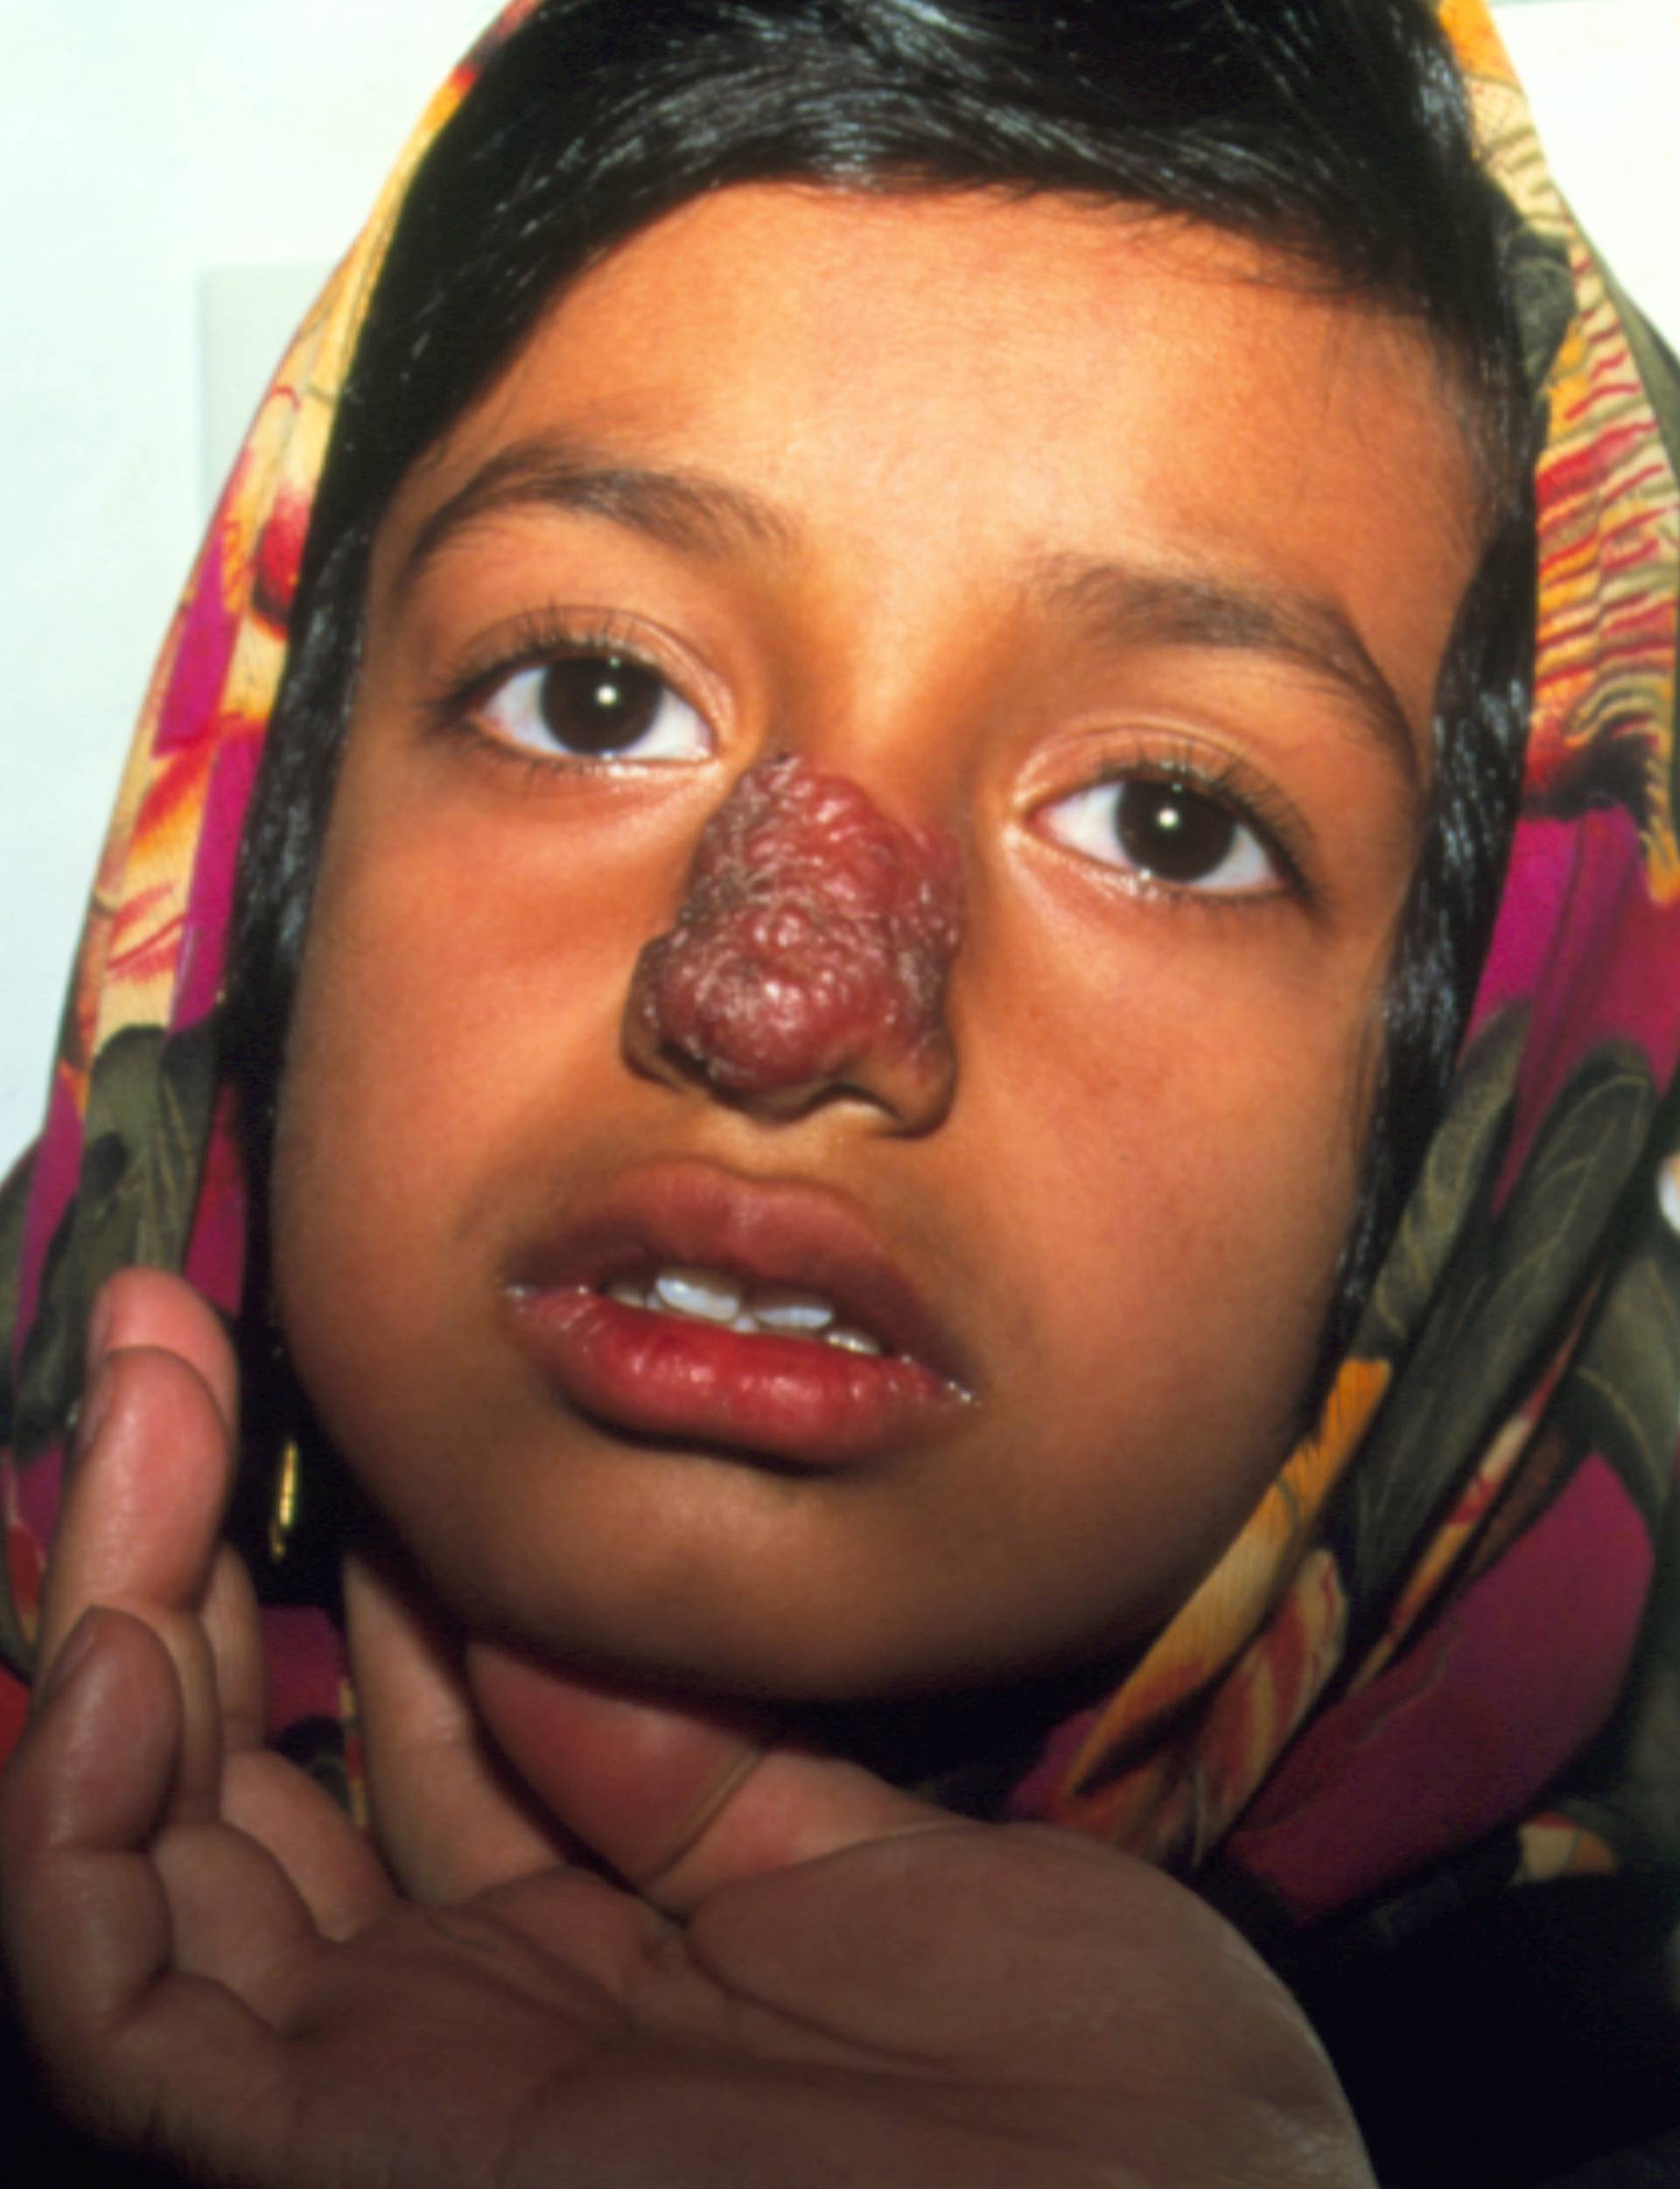 Cutaneous leishmaniasis lesion on a girl's face